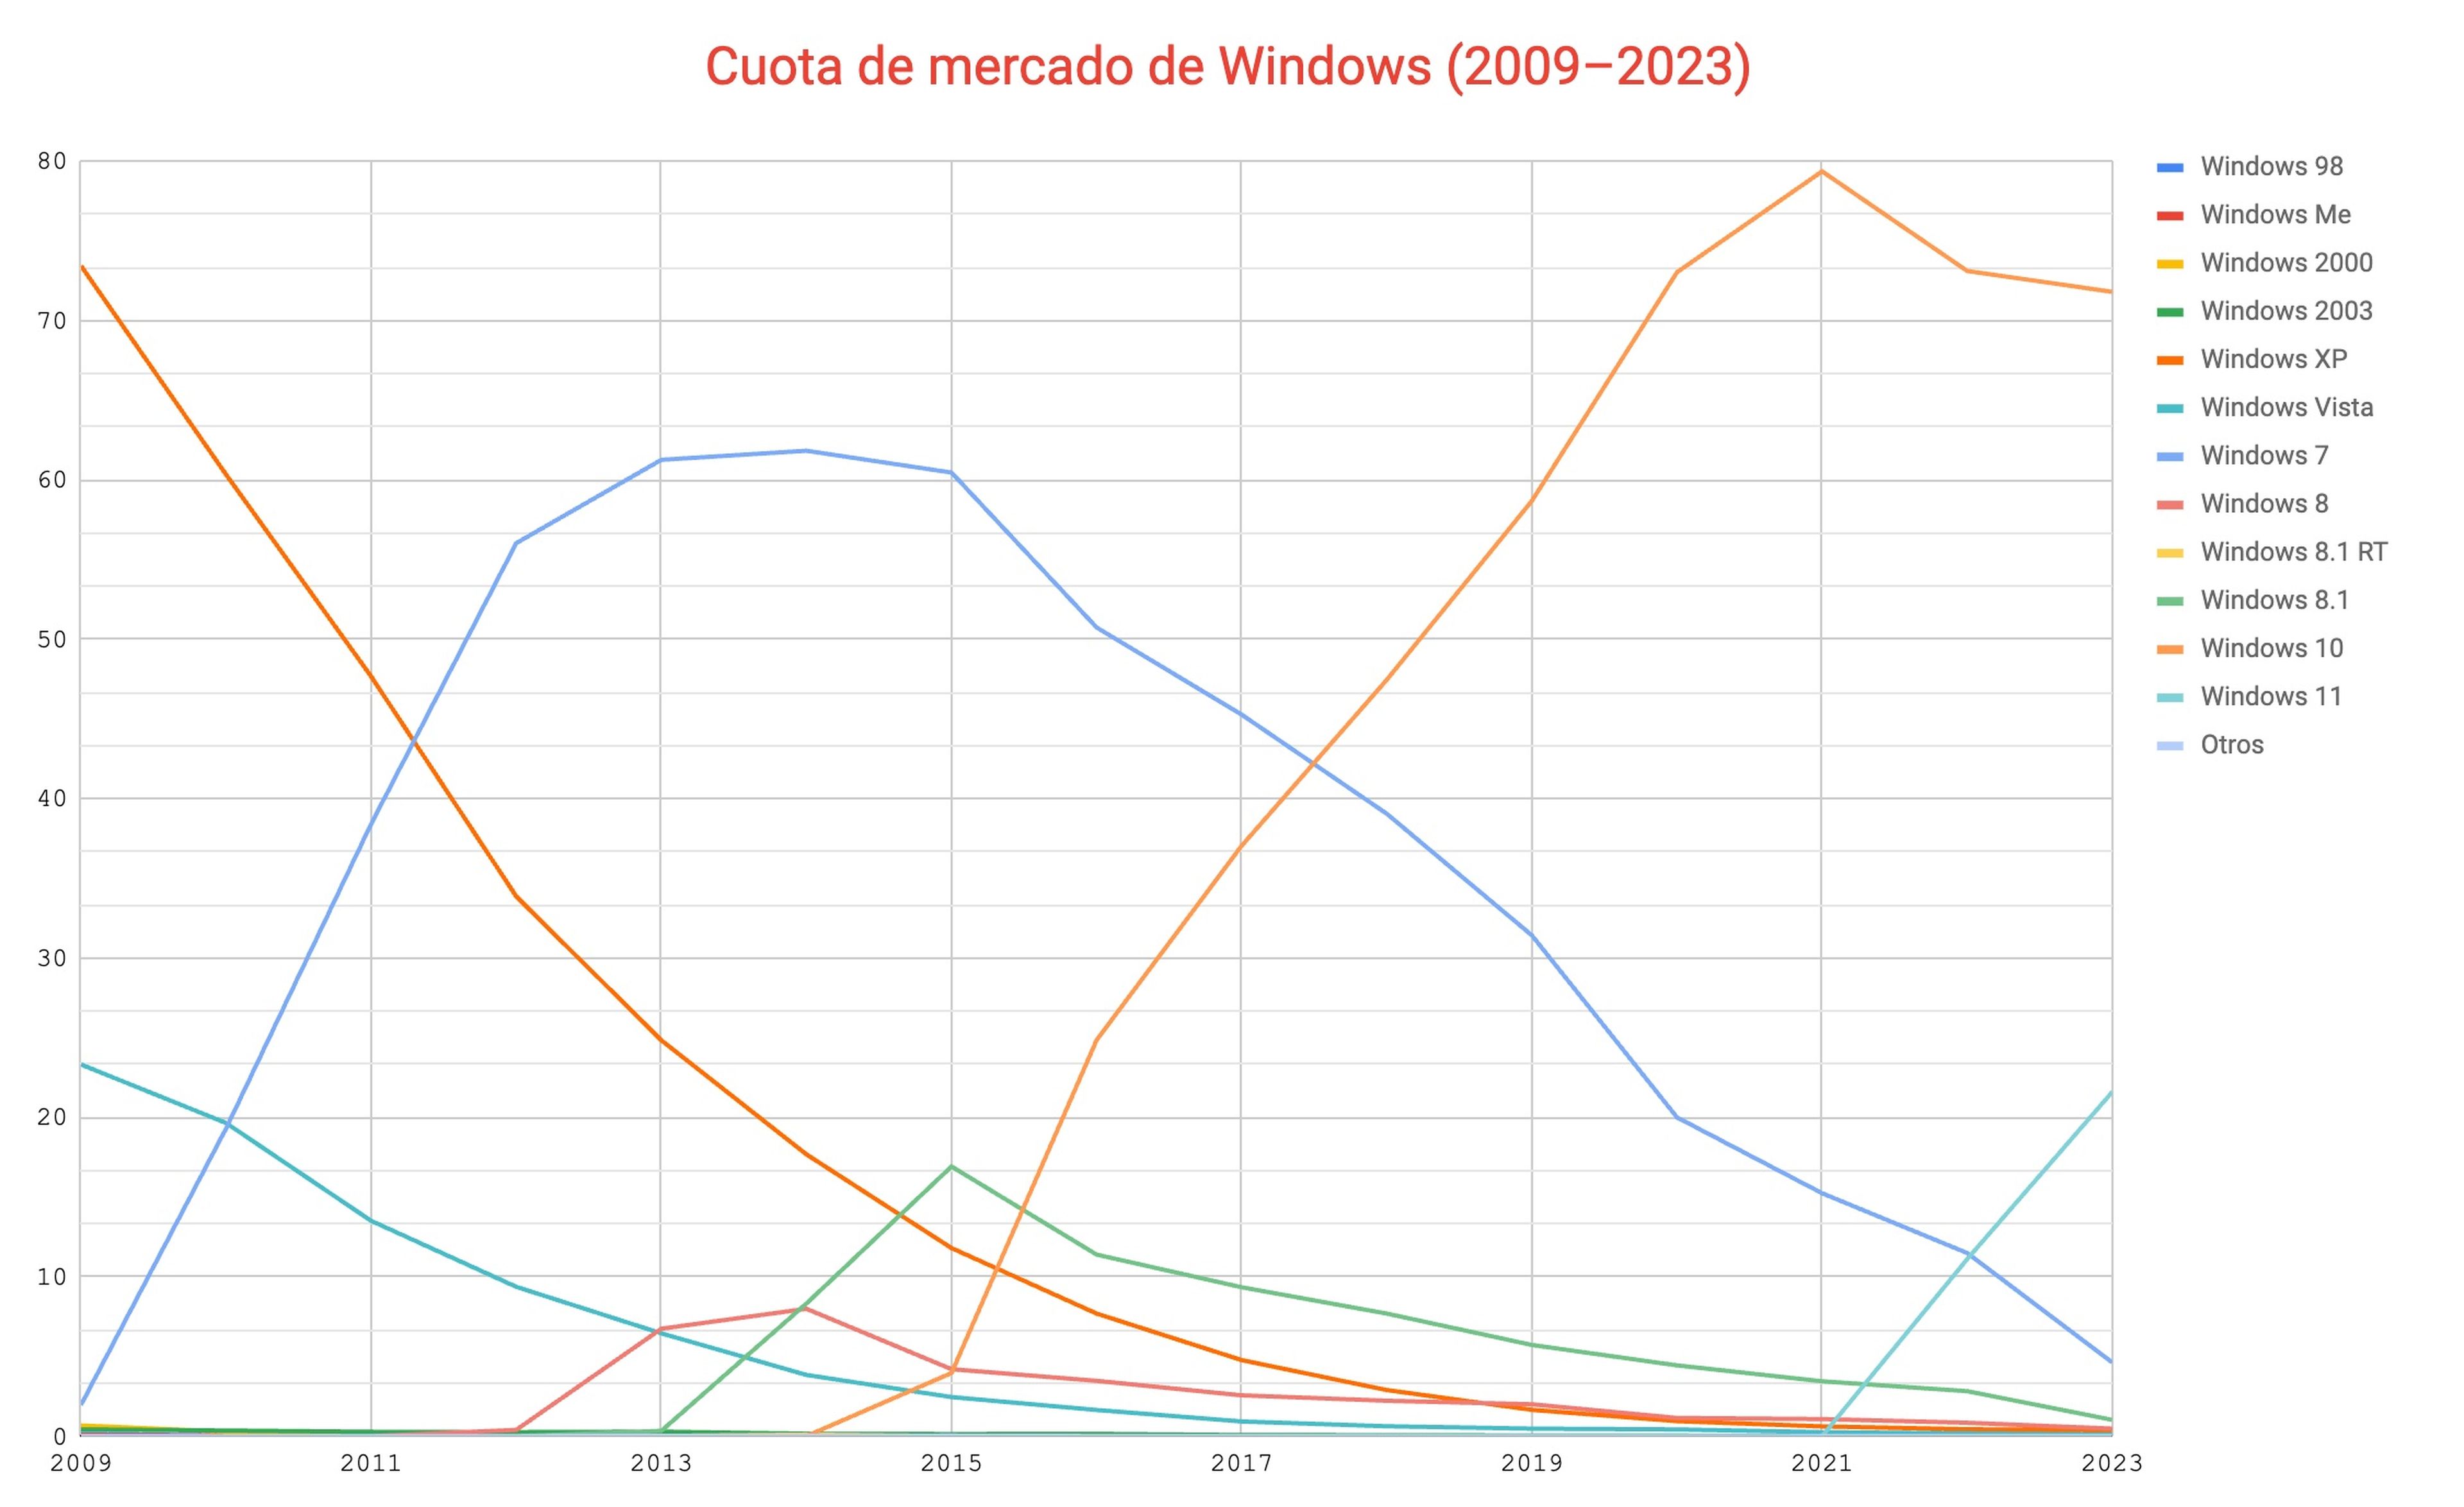 Cuota de mercado de las diferentes versiones de Windows desde 2009. Datos: Statcounter.